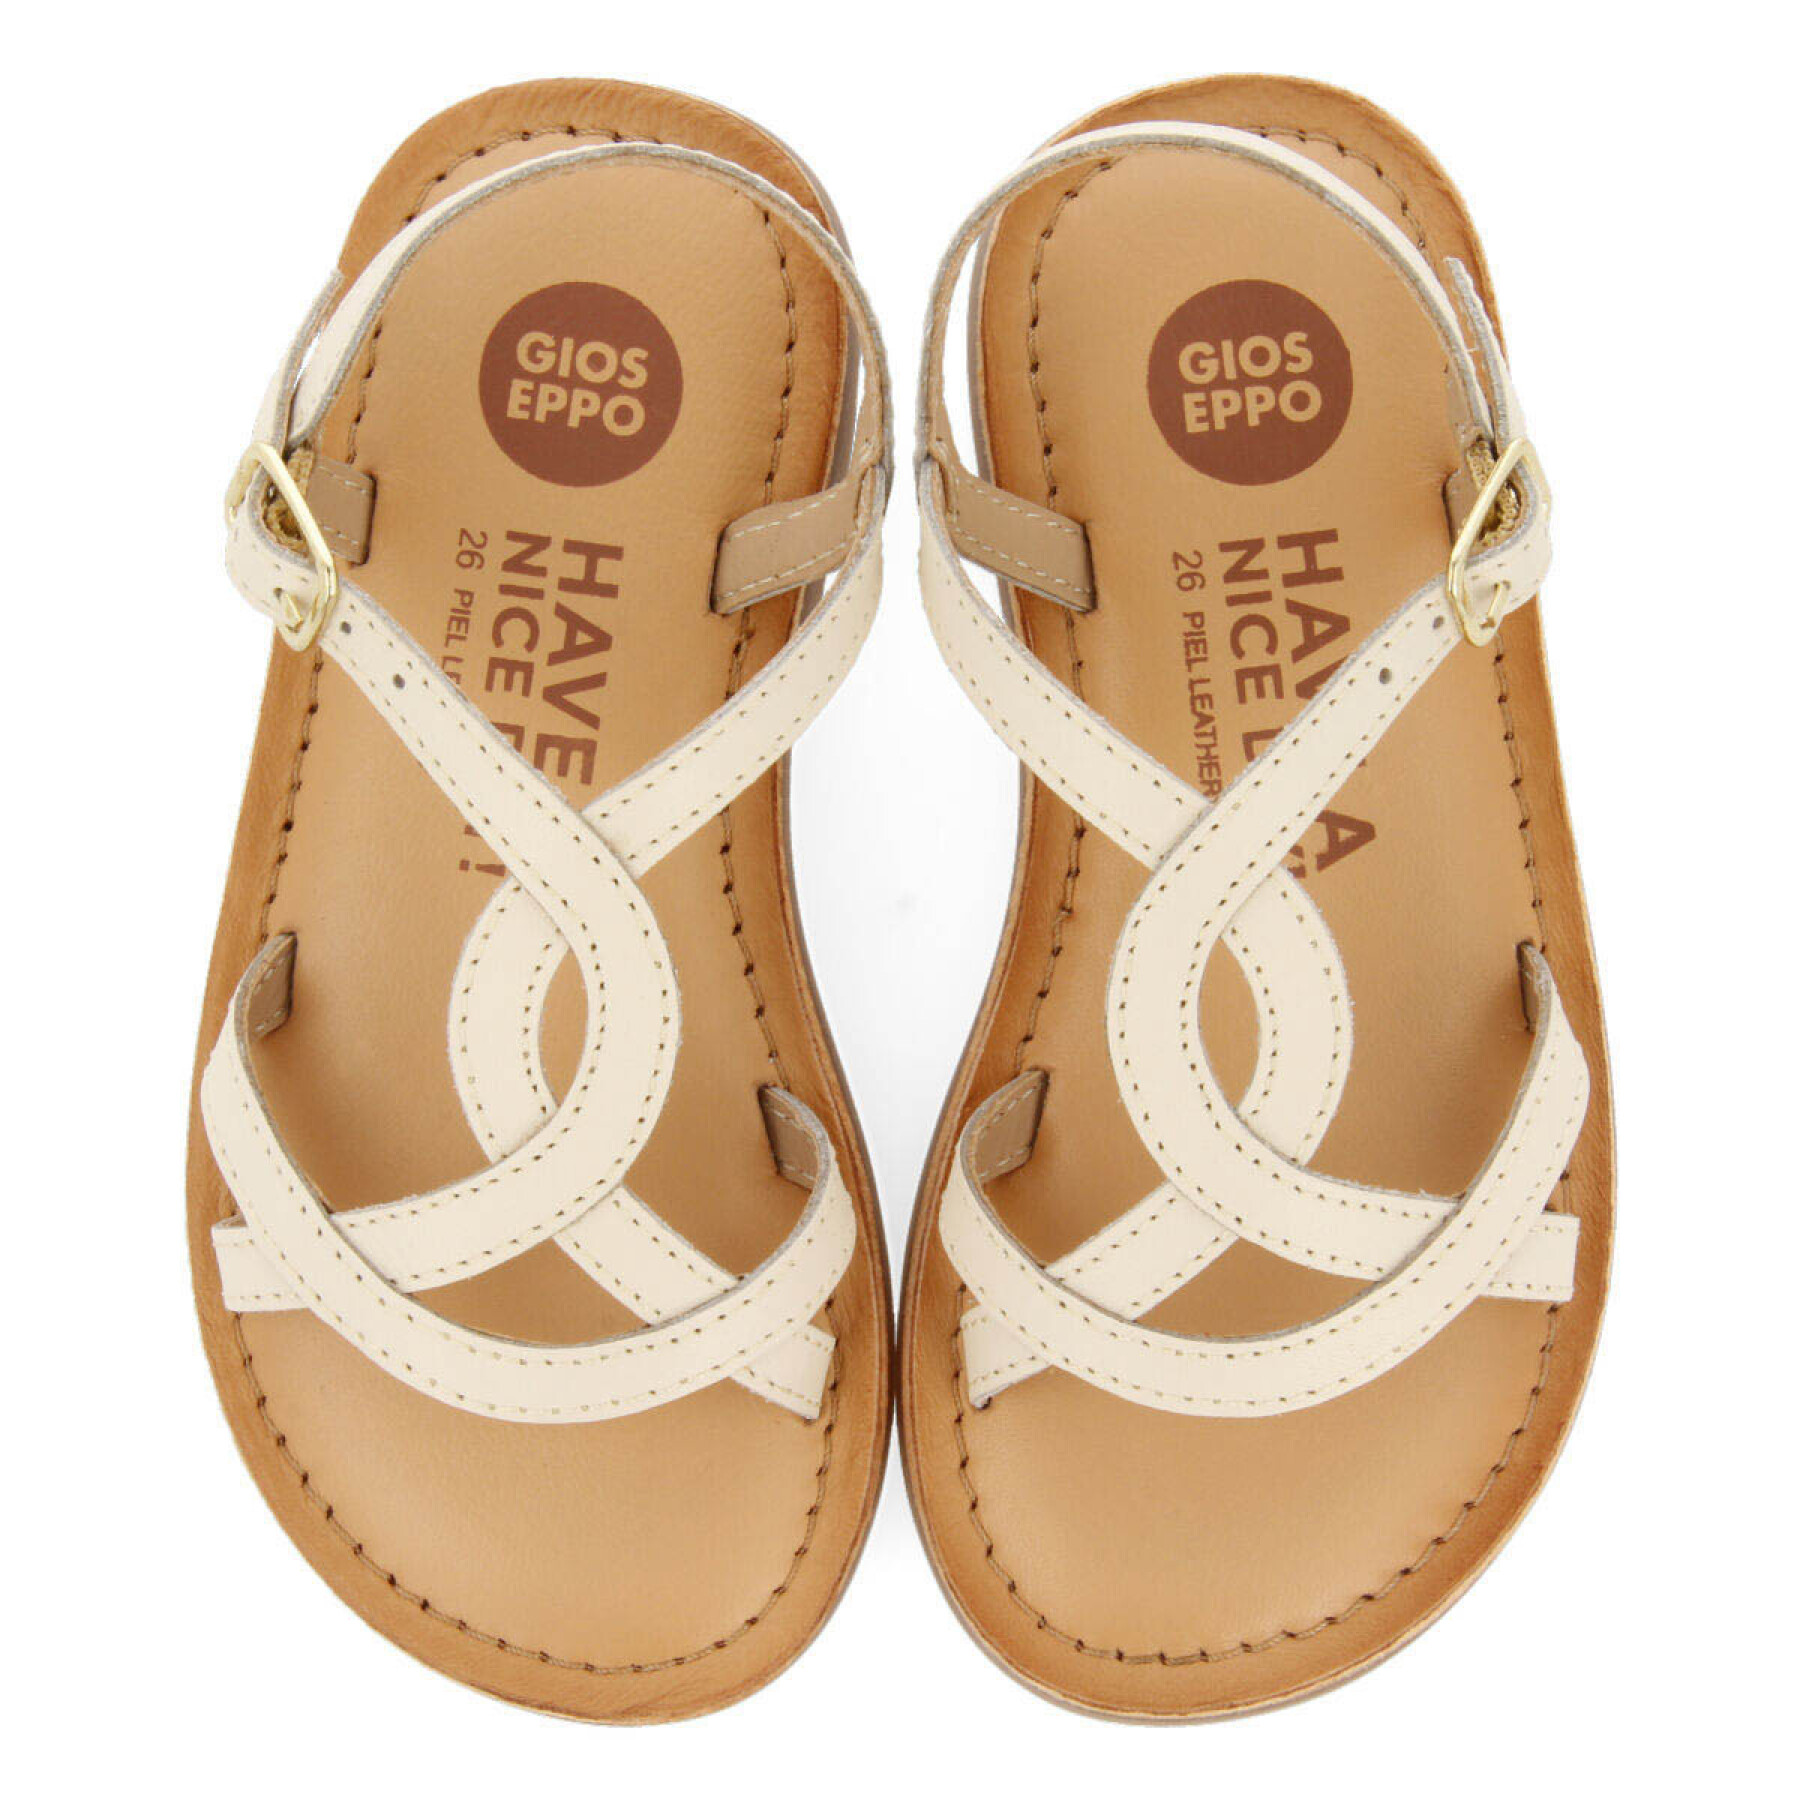 Girl's sandals Gioseppo Tilly